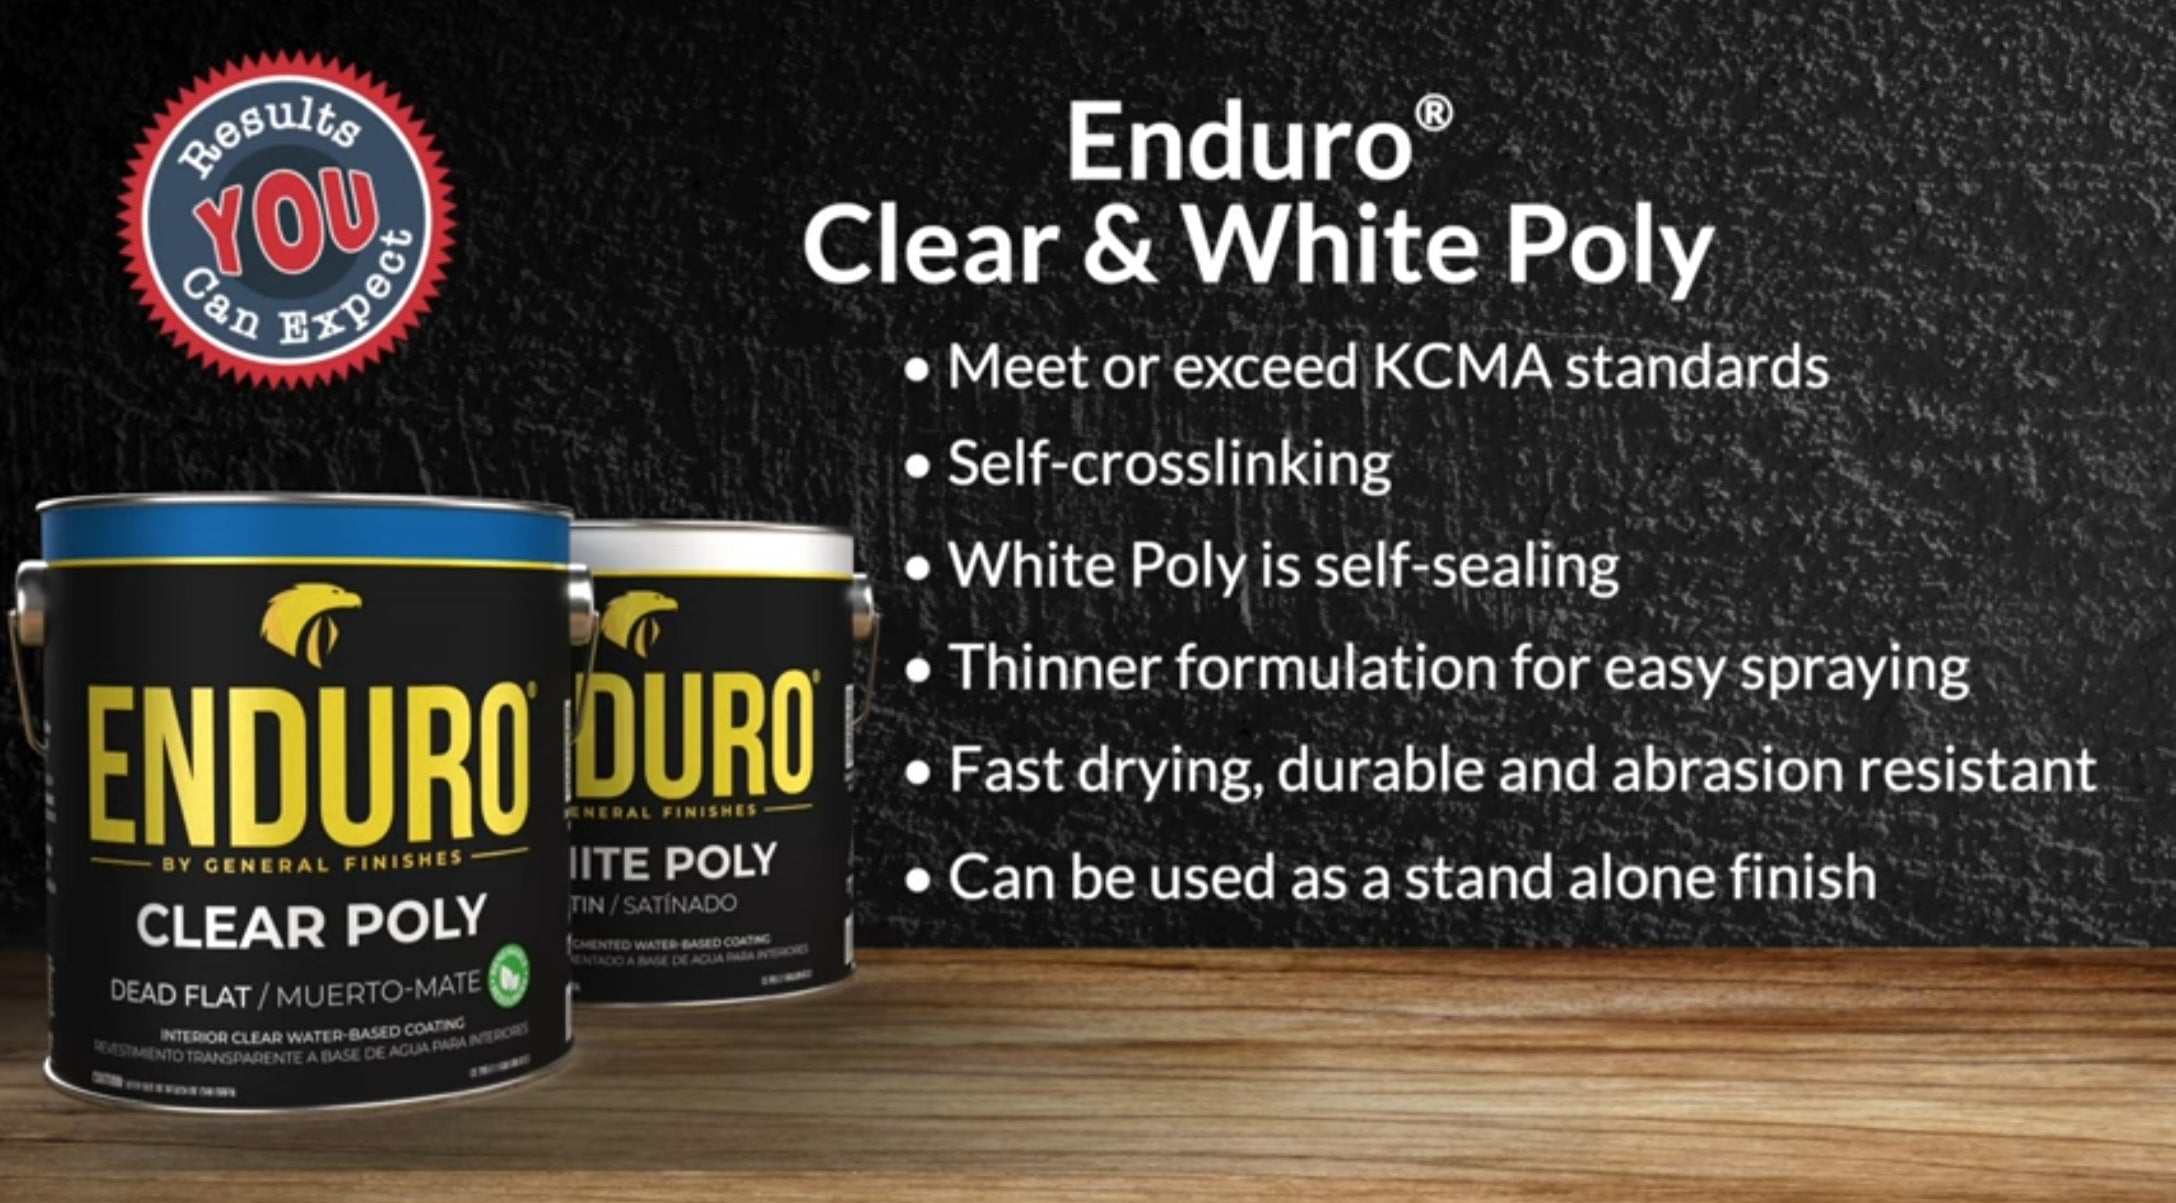 Enduro Pro White Poly Properties